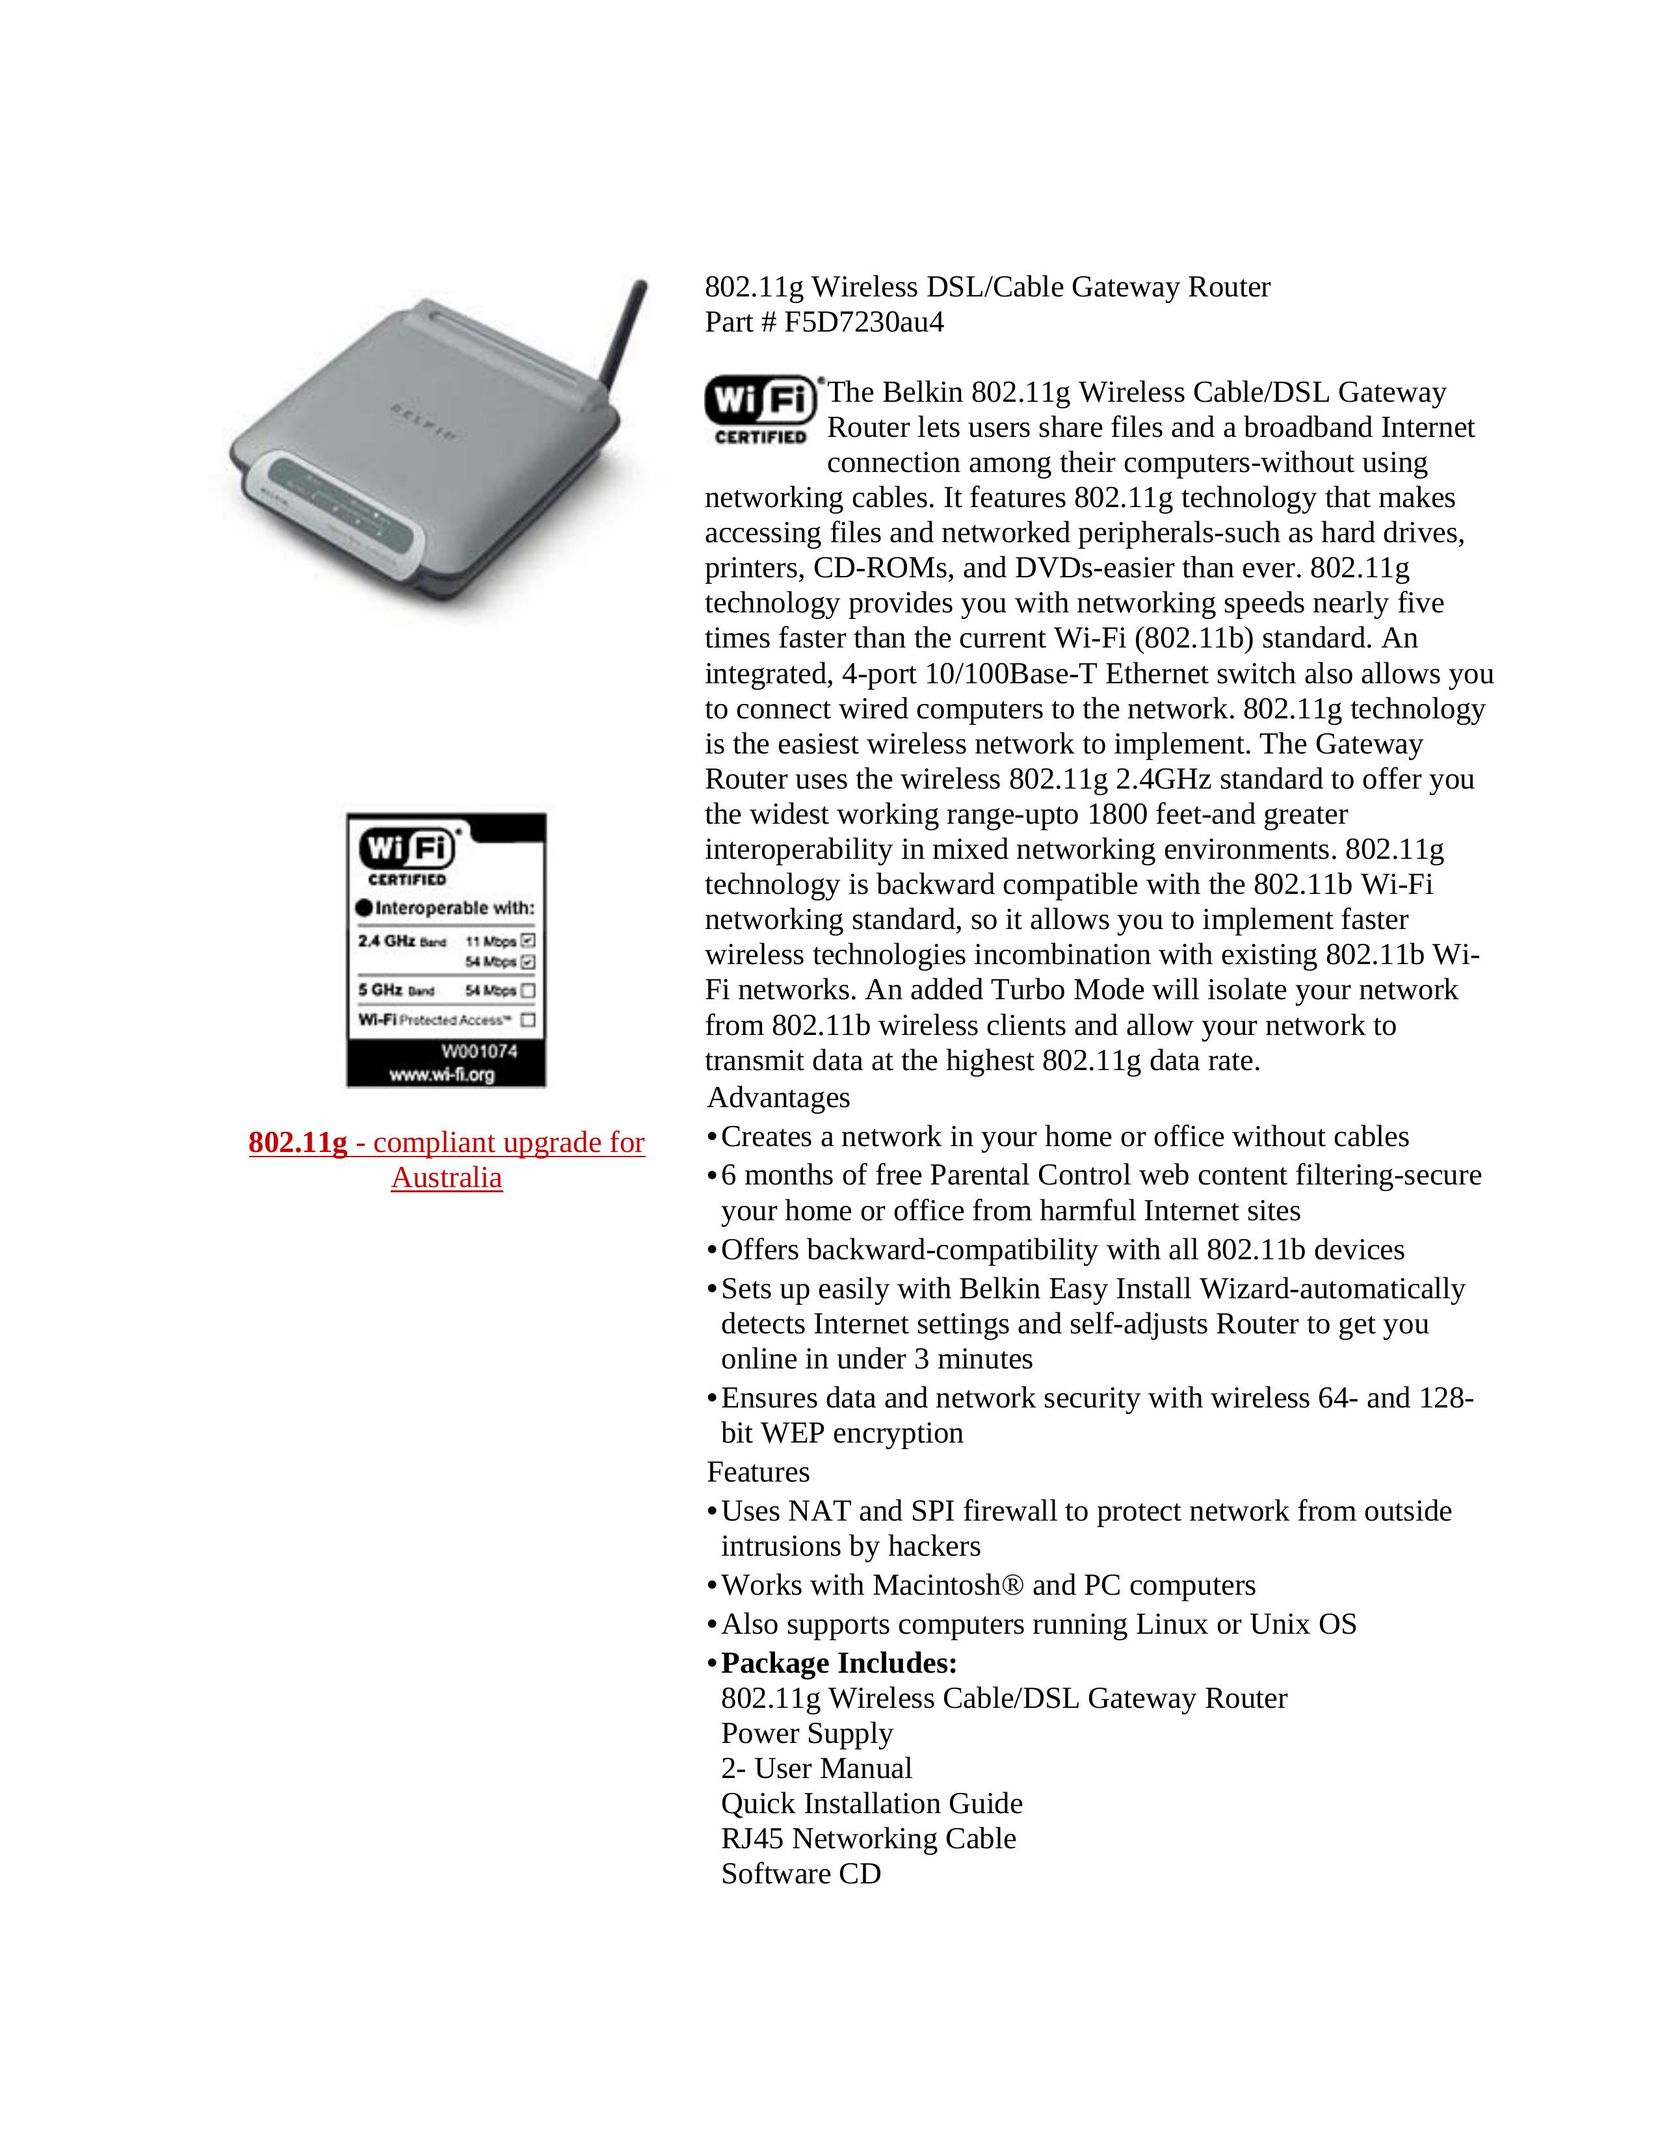 Belkin F5D7230au4 Network Router User Manual